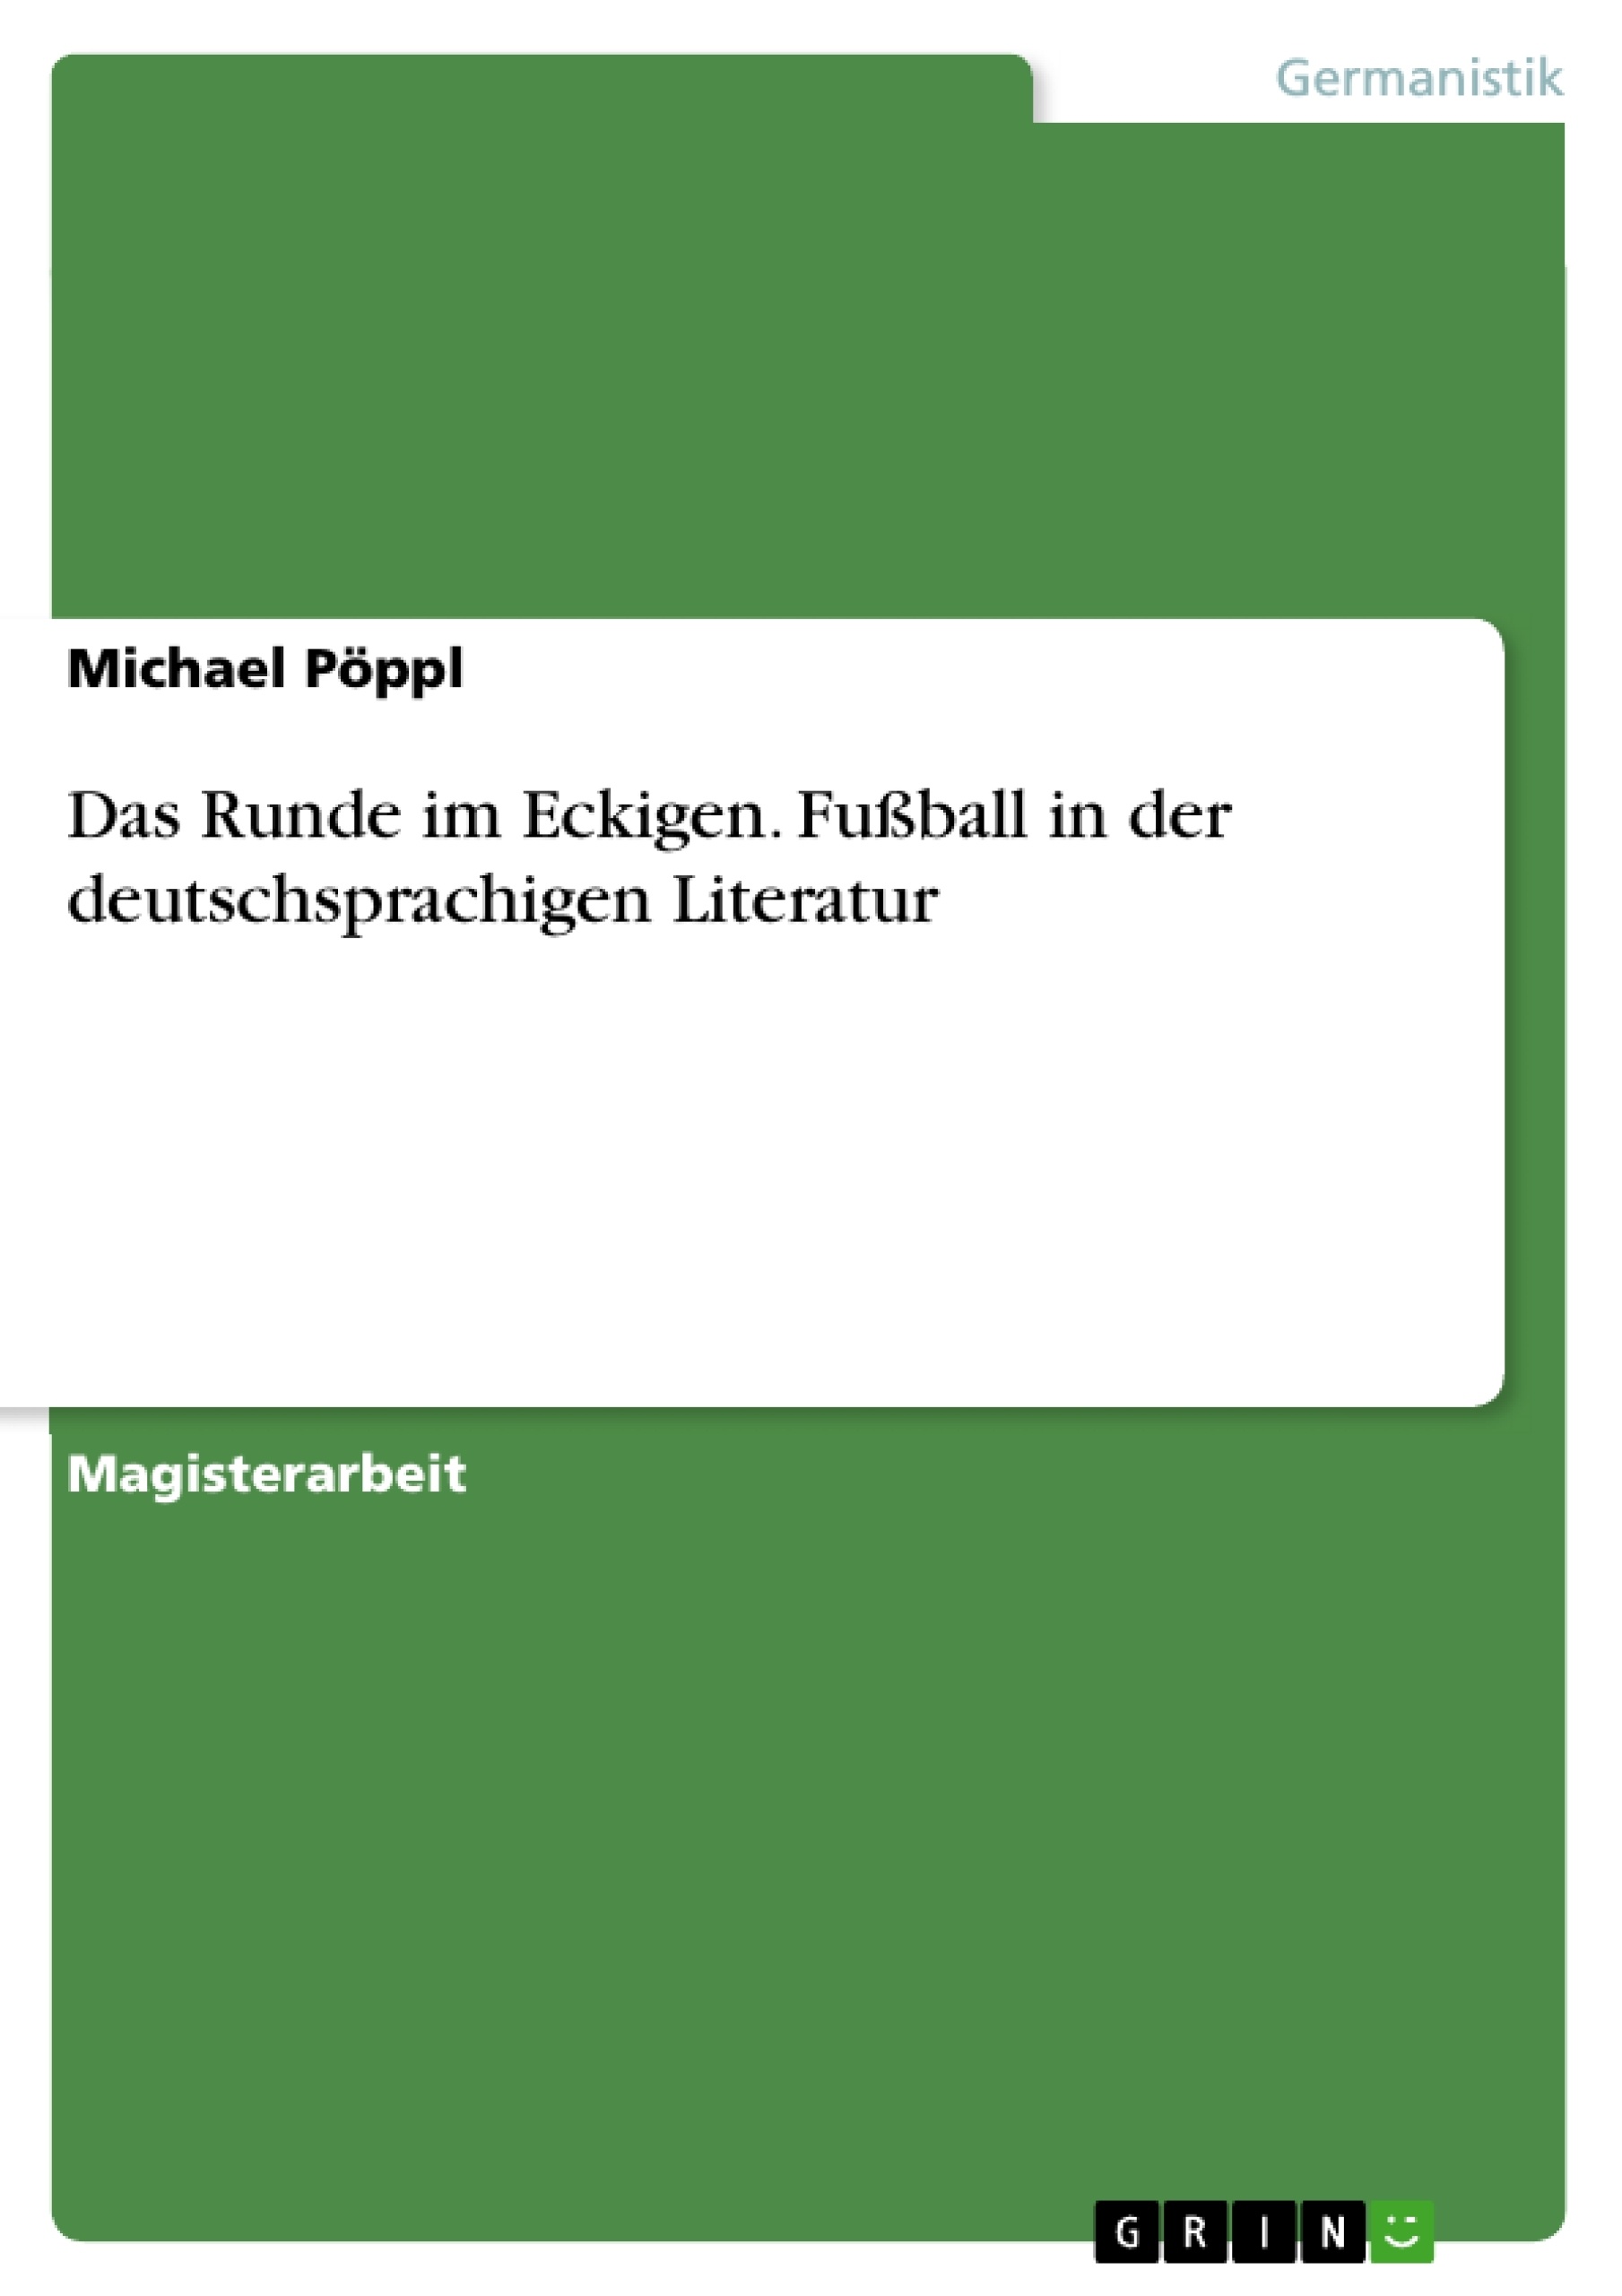 Título: Das Runde im Eckigen. Fußball in der deutschsprachigen Literatur